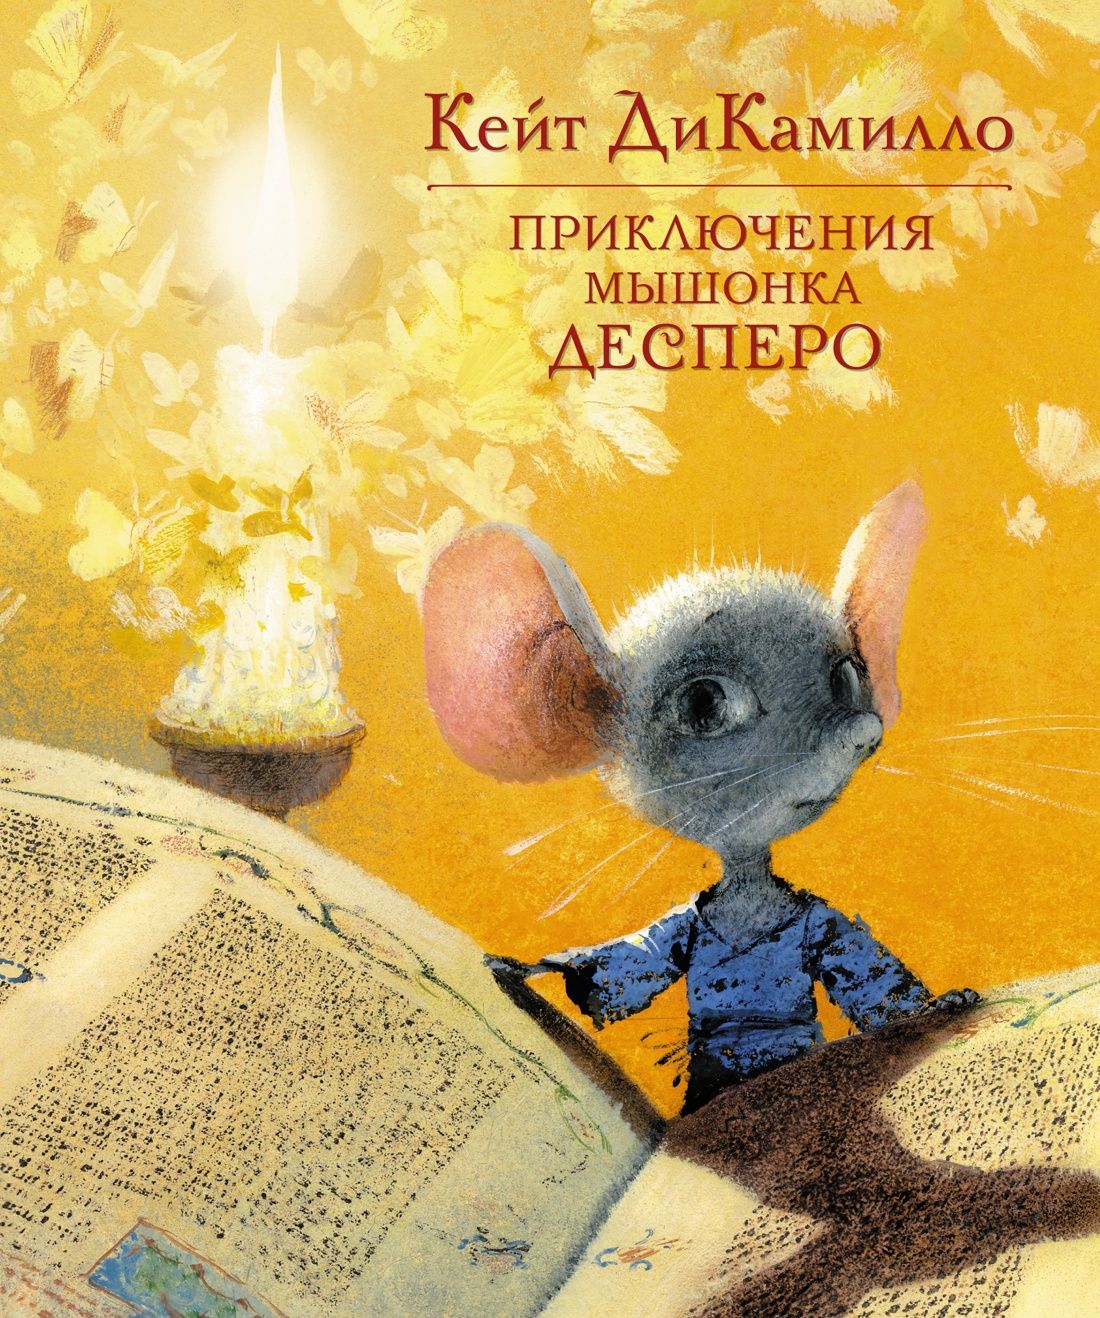 Книга про мышь. Ди Камилло к. приключения мышонка Десперо. Кейт ДИКАМИЛЛО мышонок. Приключения мышонка Десперо Кейт ДИКАМИЛЛО книга.